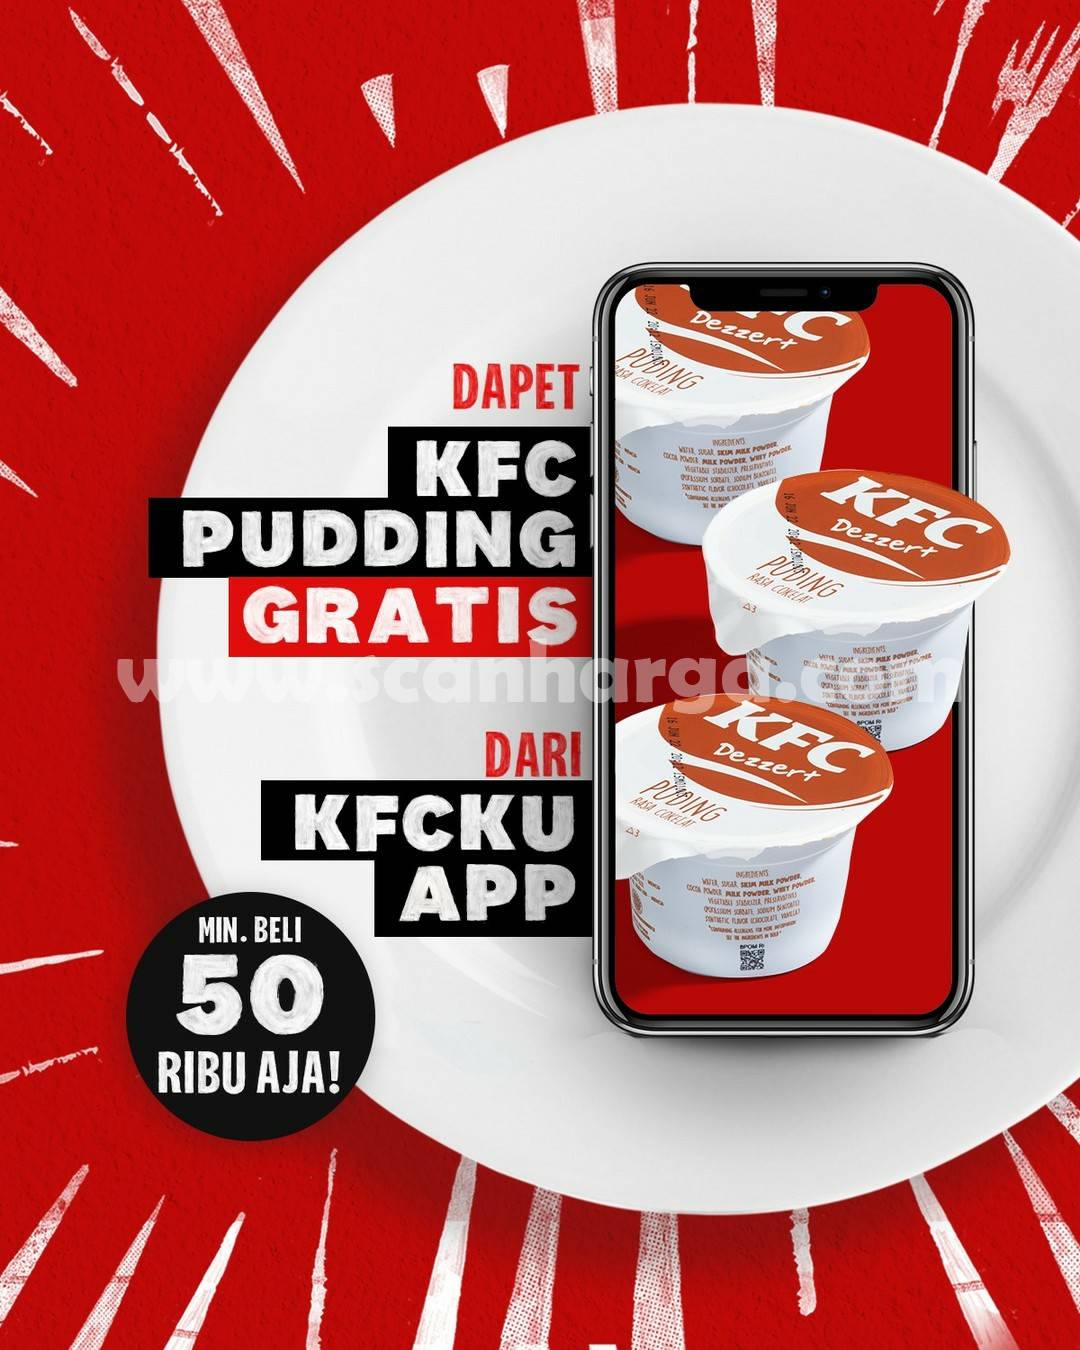 Promo KFC GRATIS Pudding via KFCku App